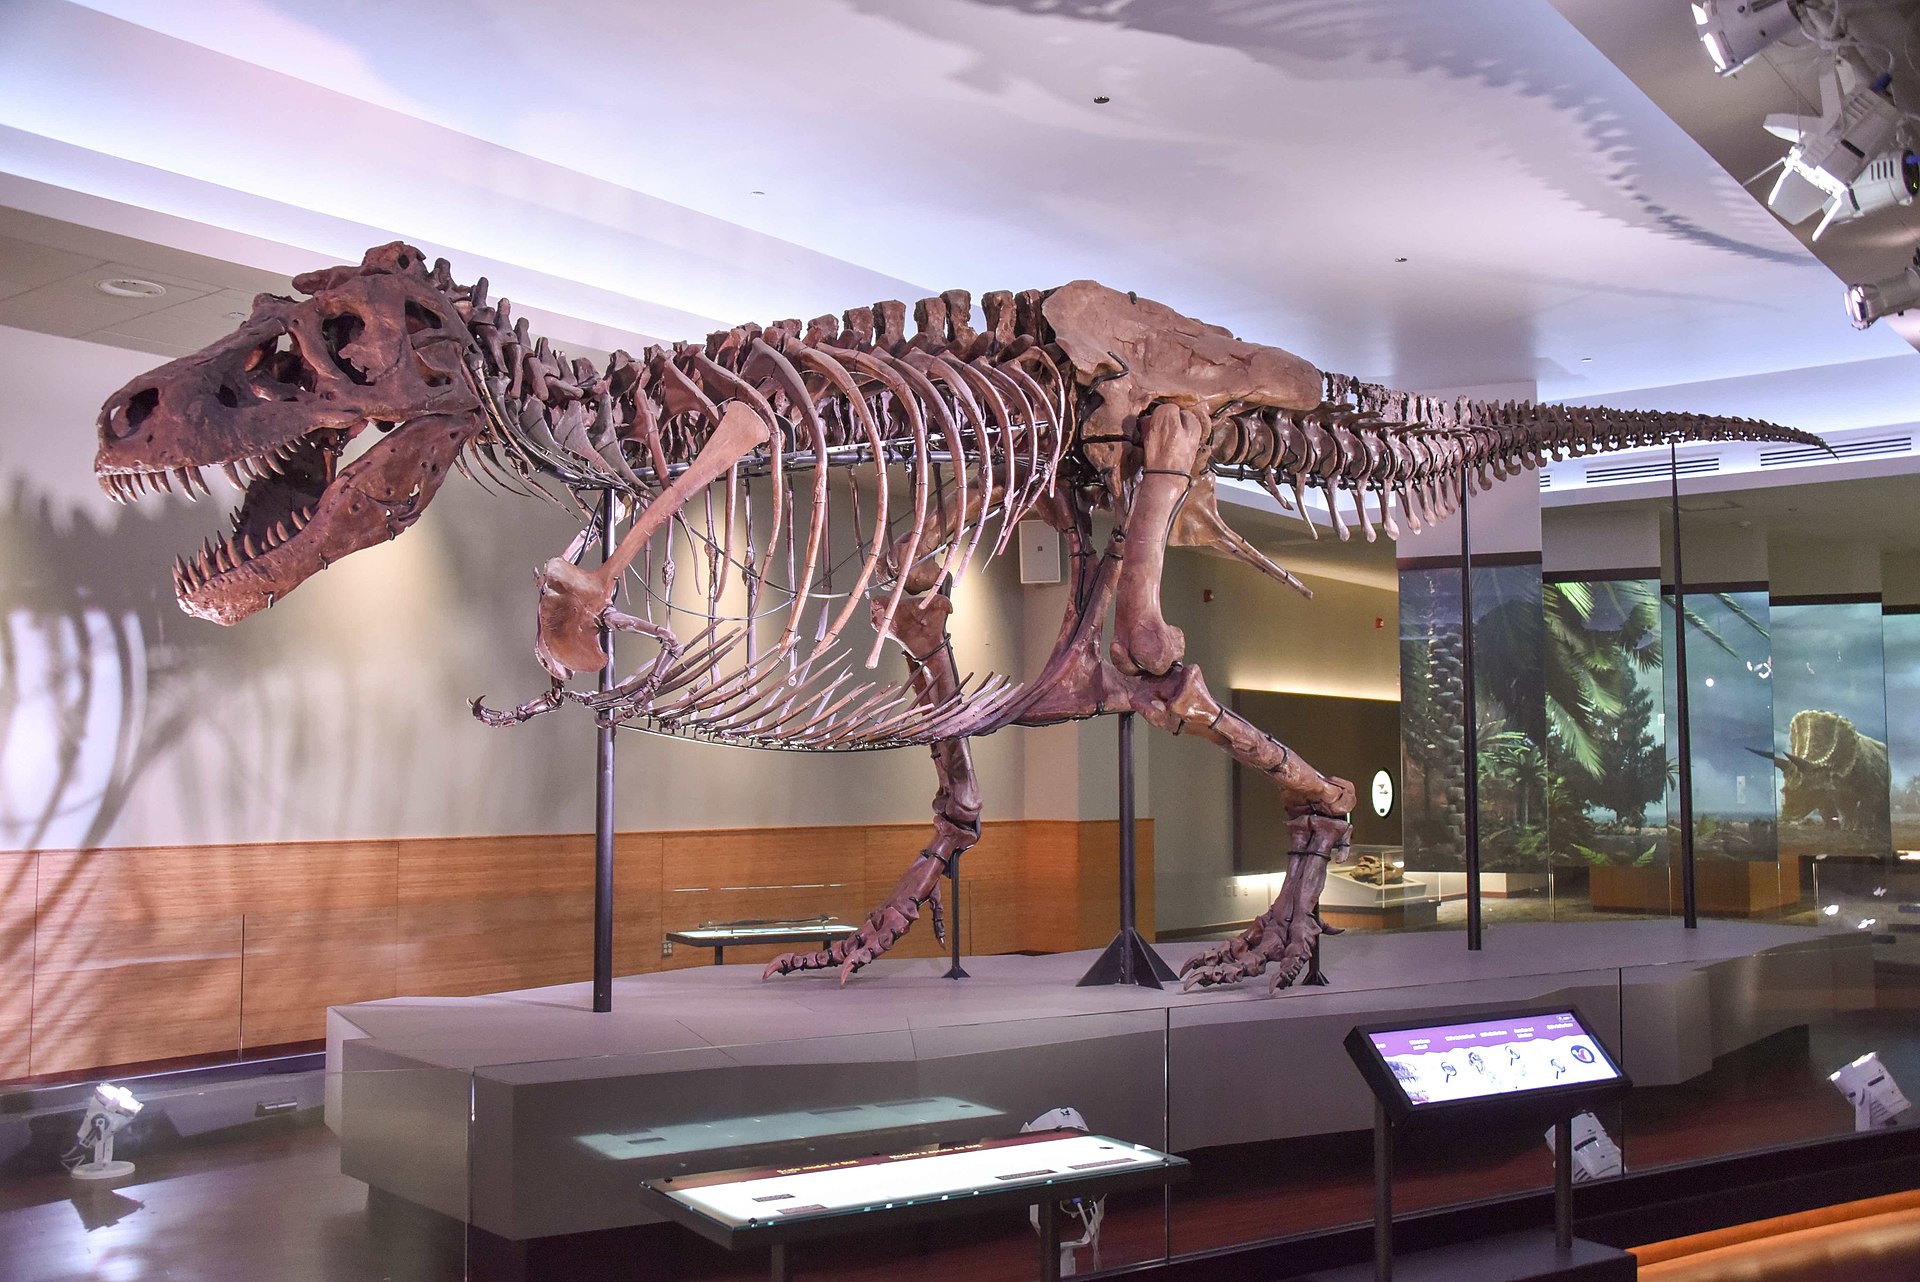 Podle vědecké práce z roku 2009 mohl být i obří jedinec druhu Tyrannosaurus rex, známý jako „Sue“, zahuben infekcí způsobenou parazitickým prvokem. Nová studie ale tuto verzi nepodporuje. Kredit: Evolutionnumber9; Wikipedia (CC BY-SA 4.0)